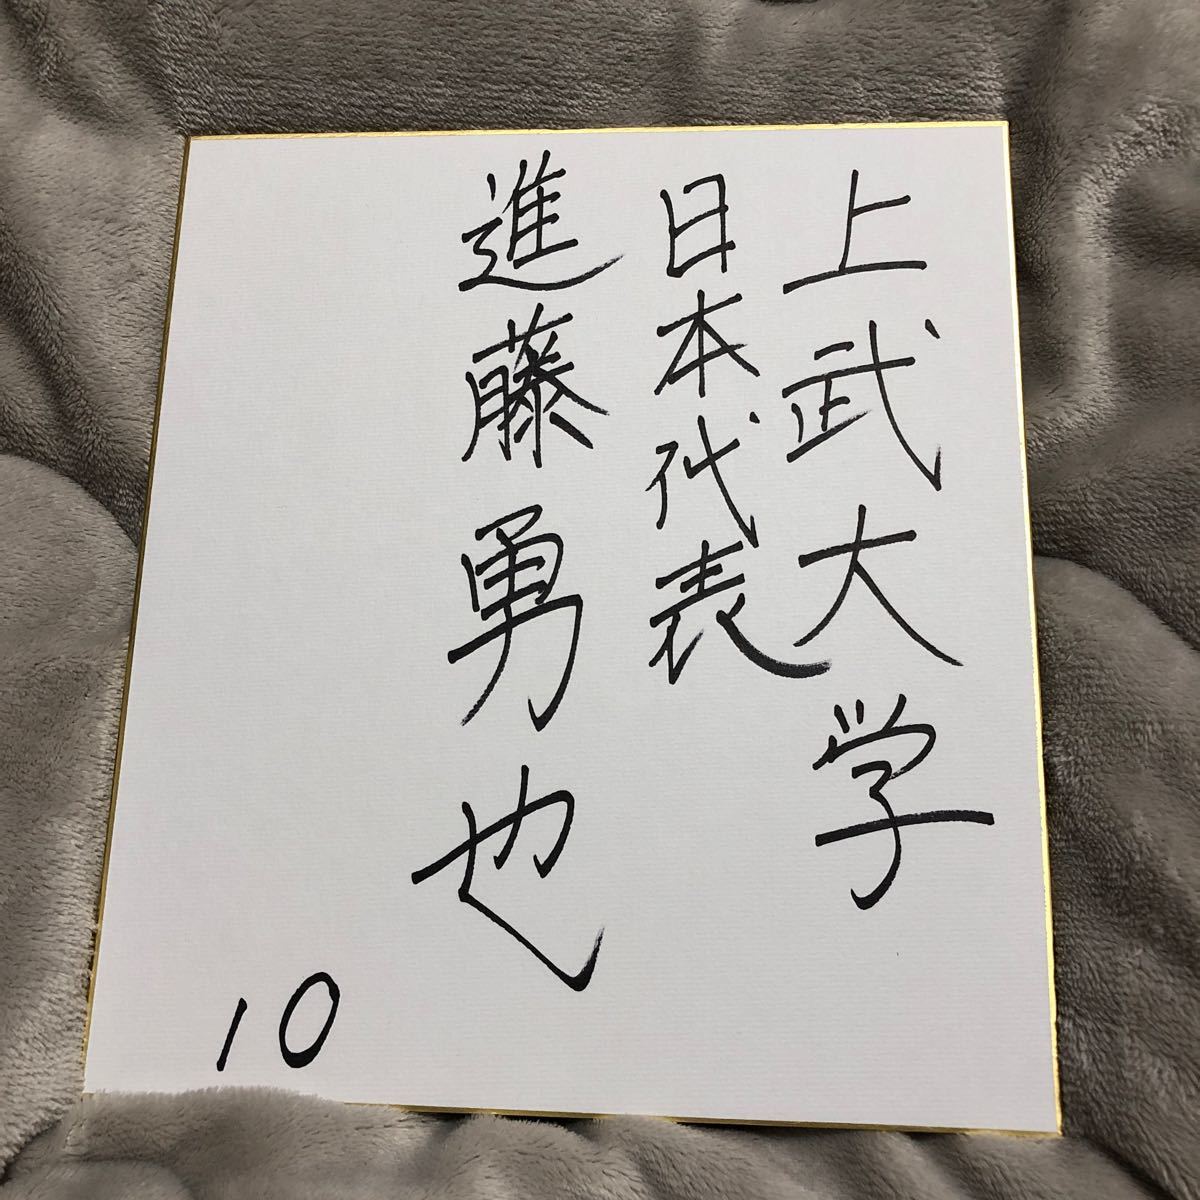 Hokkaido Nippon-Ham Fighters Yuya Shindo autografiado novato novato en papel de colores, béisbol, Recuerdo, Bienes relacionados, firmar